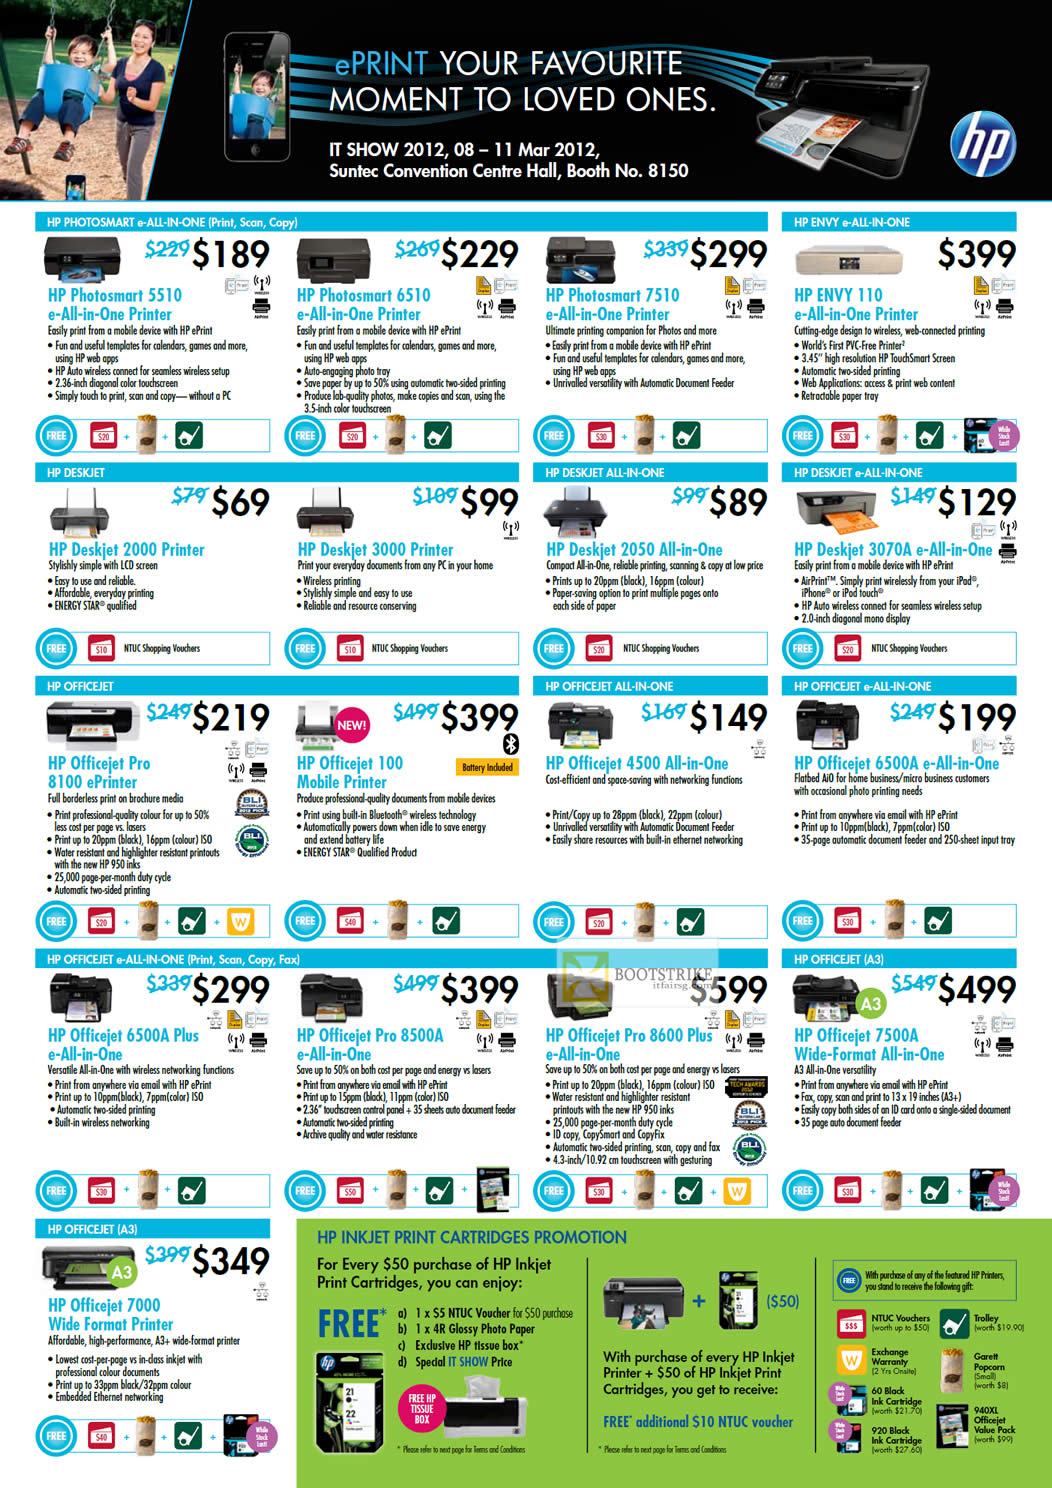 IT SHOW 2012 price list image brochure of HP Printers Photosmart 5510 6510 7510, Envy 110, Deskjet 2000 3000 2050 3070A, Officejet Pro 8100 10 4500 6500a Plus 8500a 8600 Plus 7500A 7000